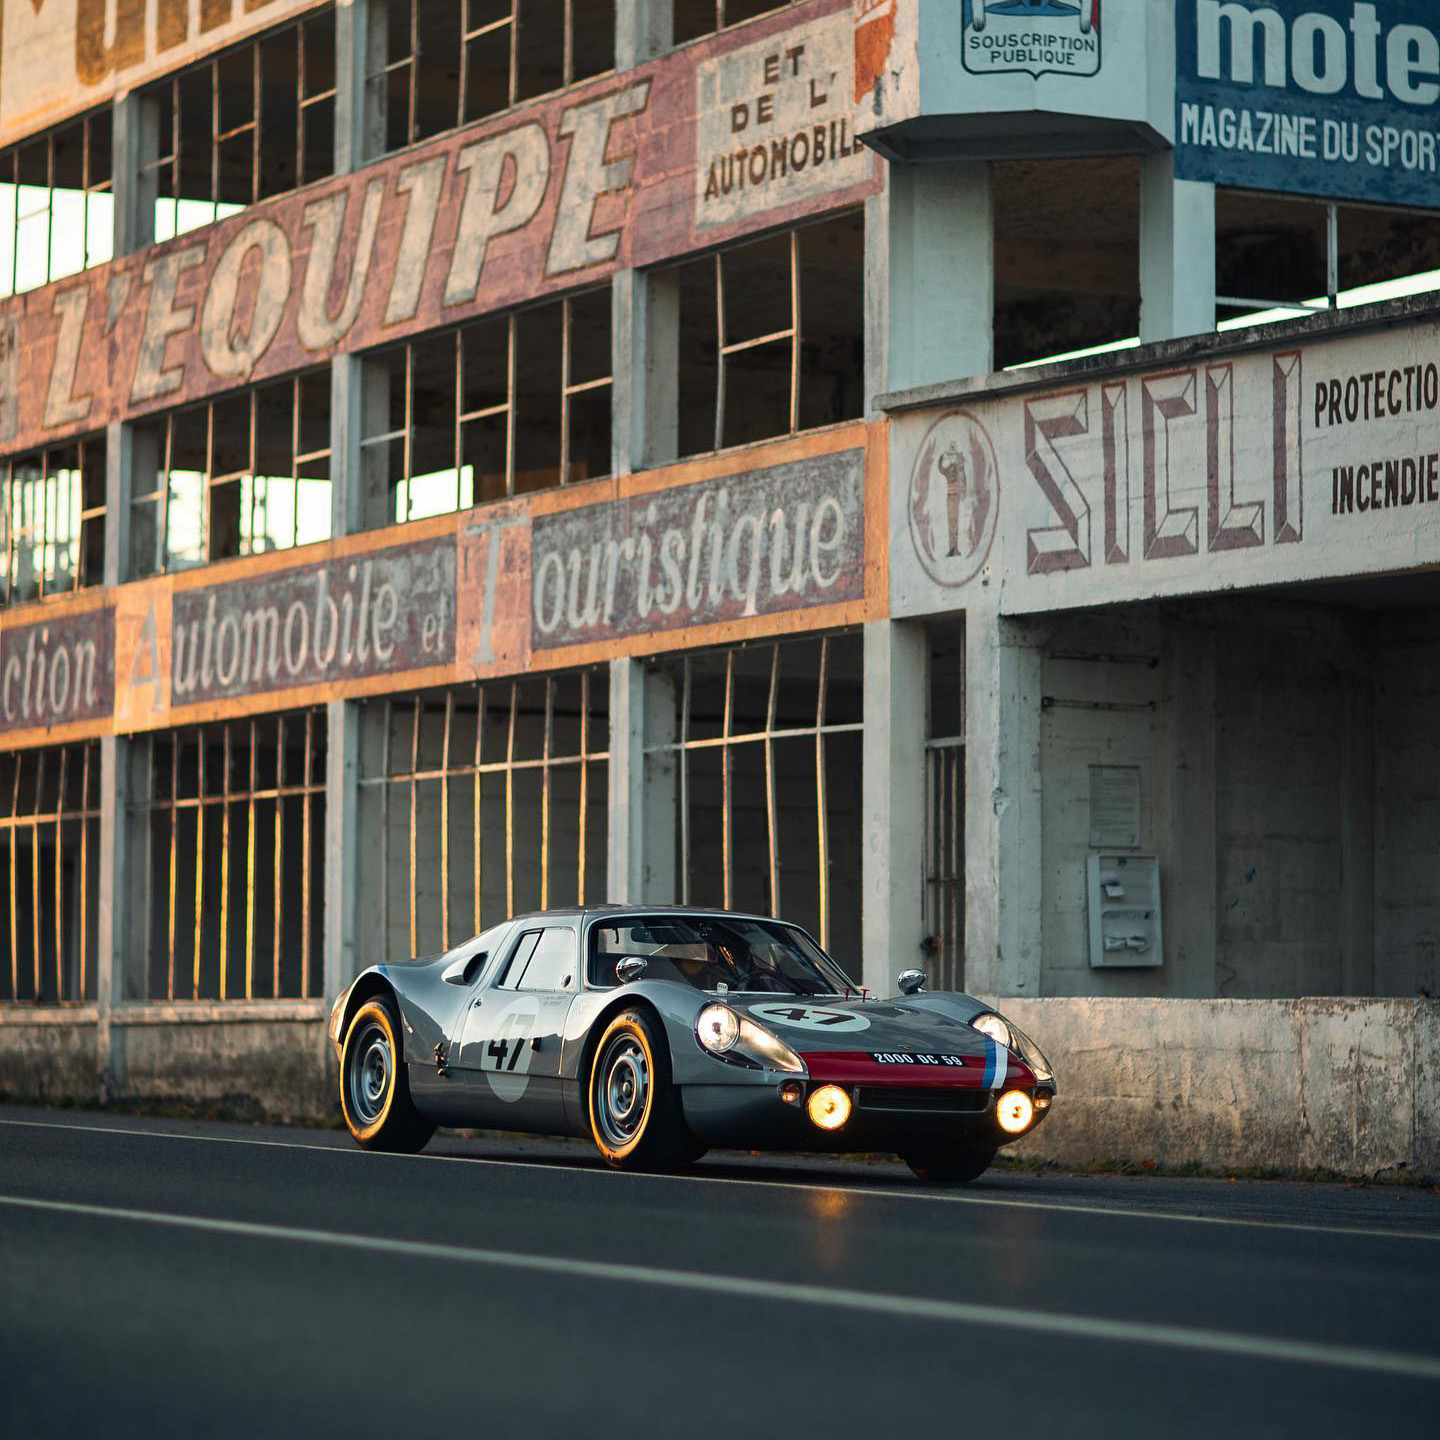 La rencontre : Porsche 904 GTS & Circuit de Reims-Gueux